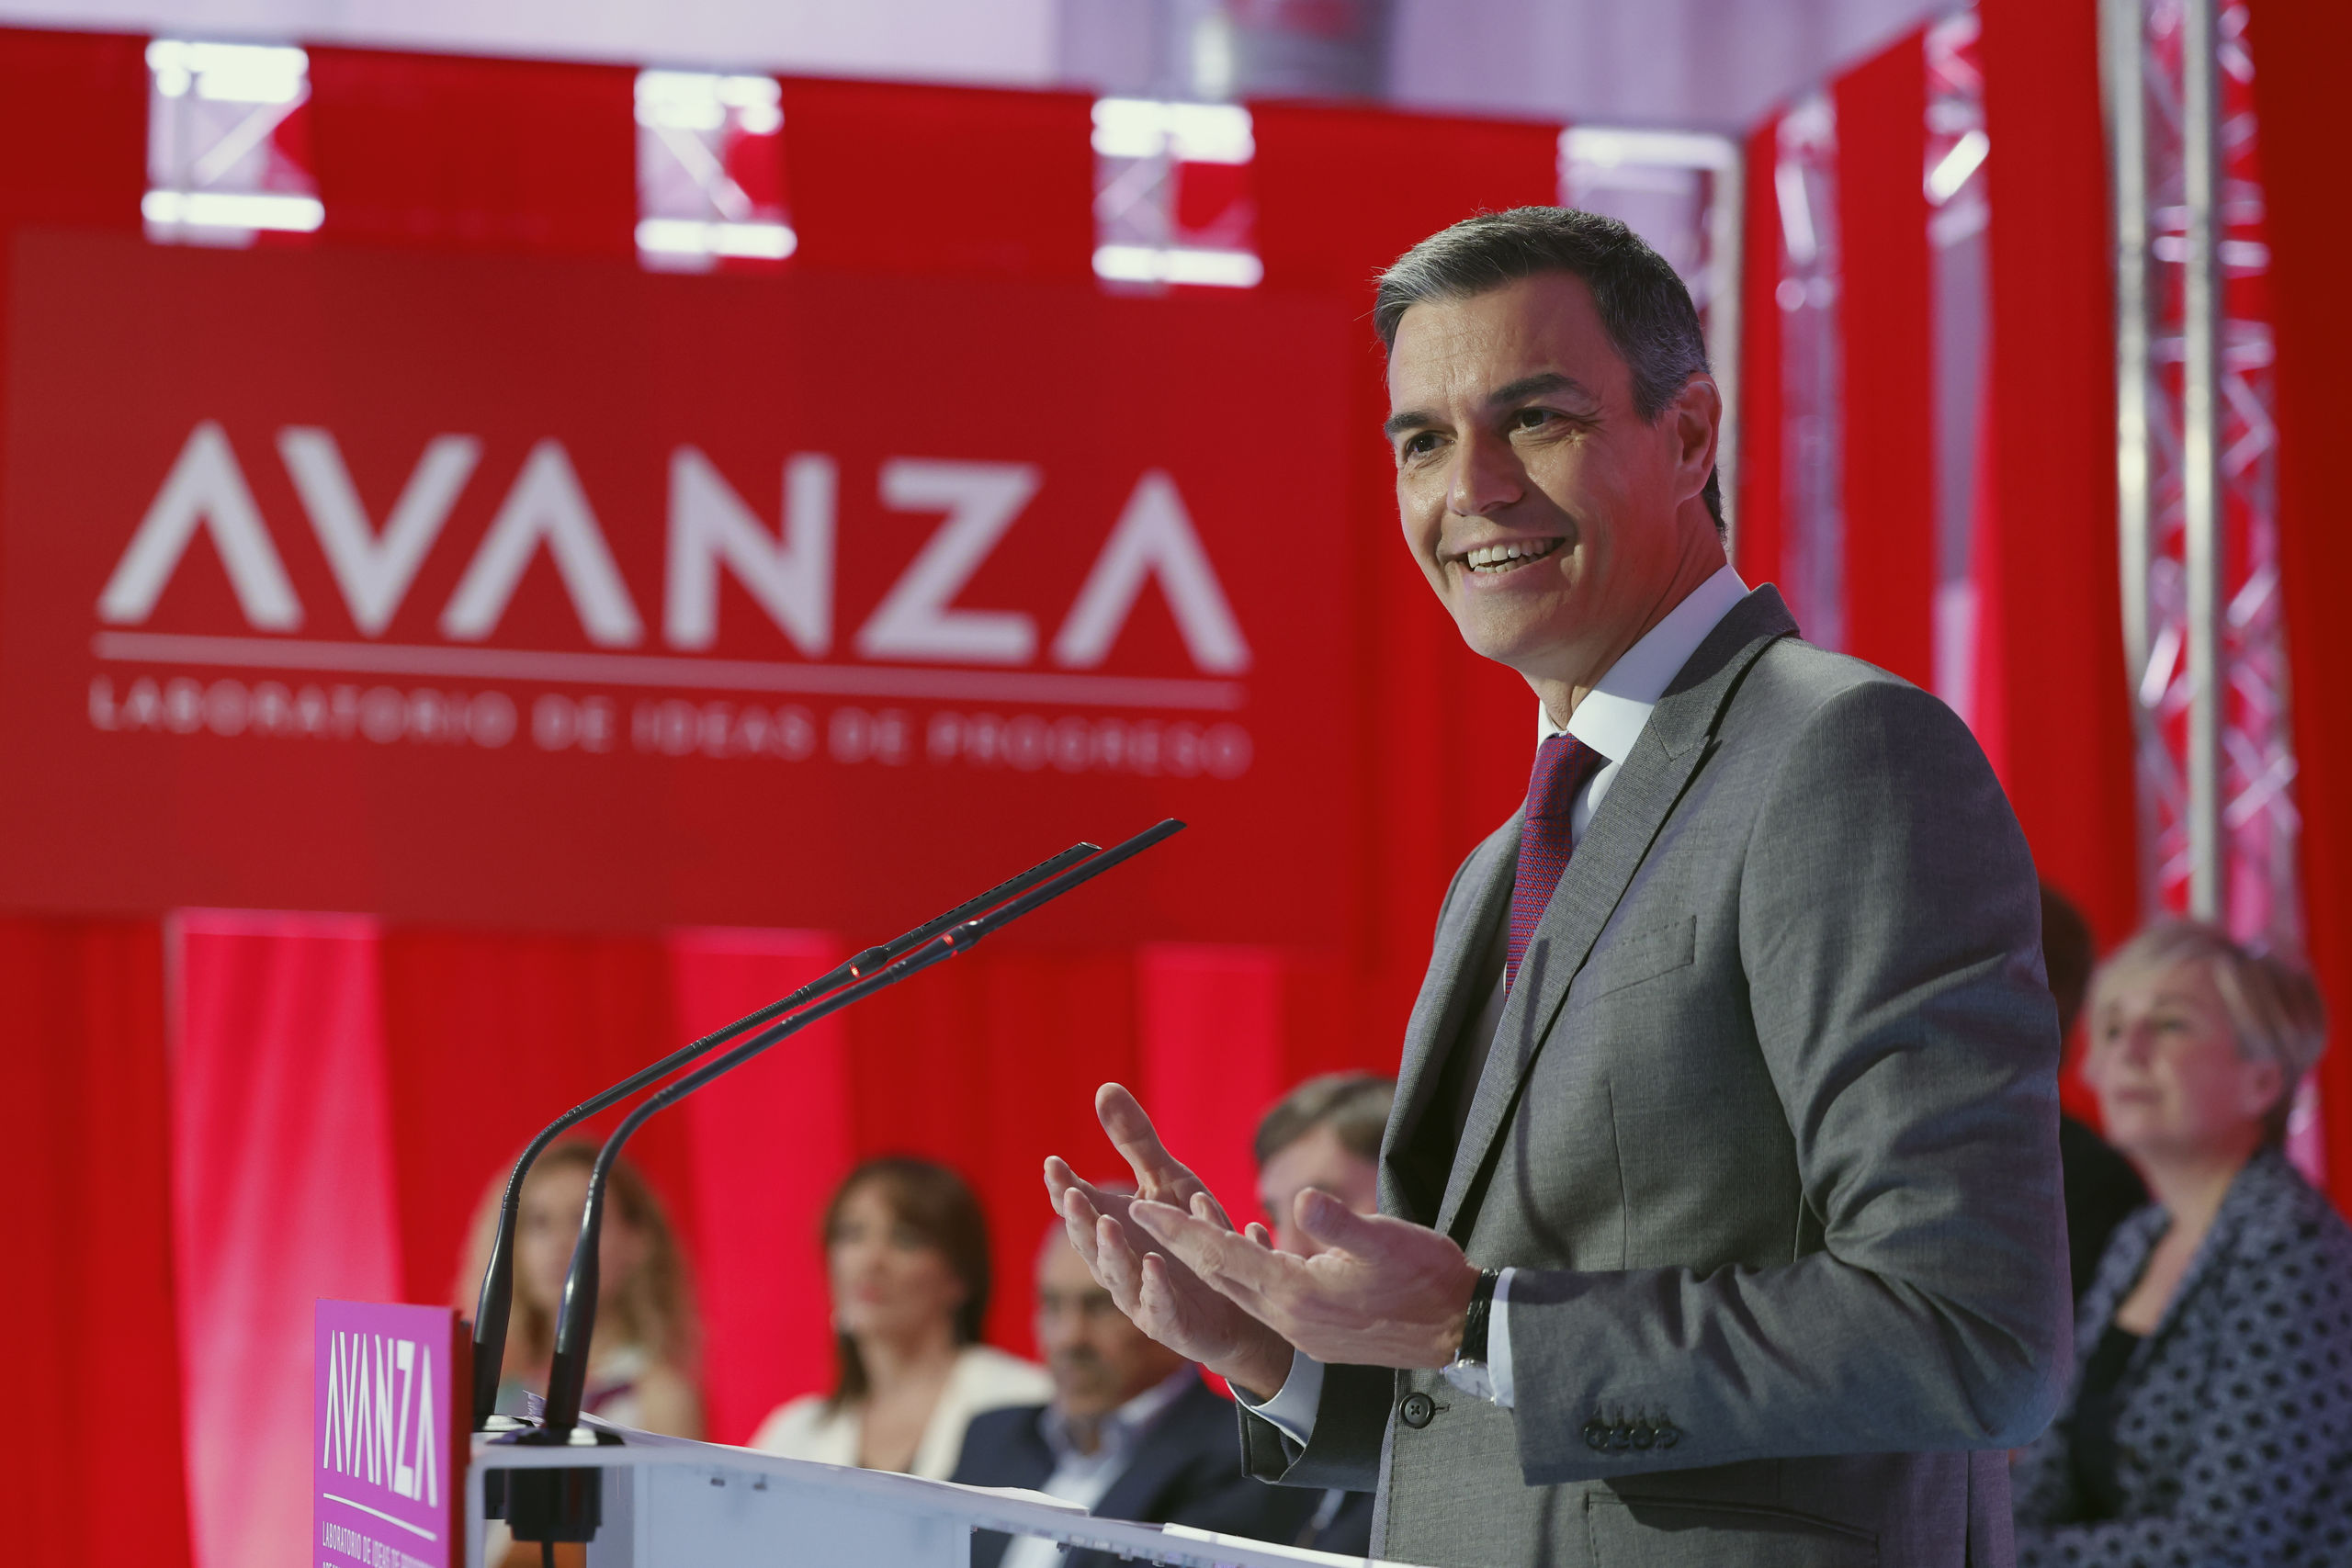 El alcalde de La Unión acusa a Sánchez de plagio tras presentar su nueva fundación